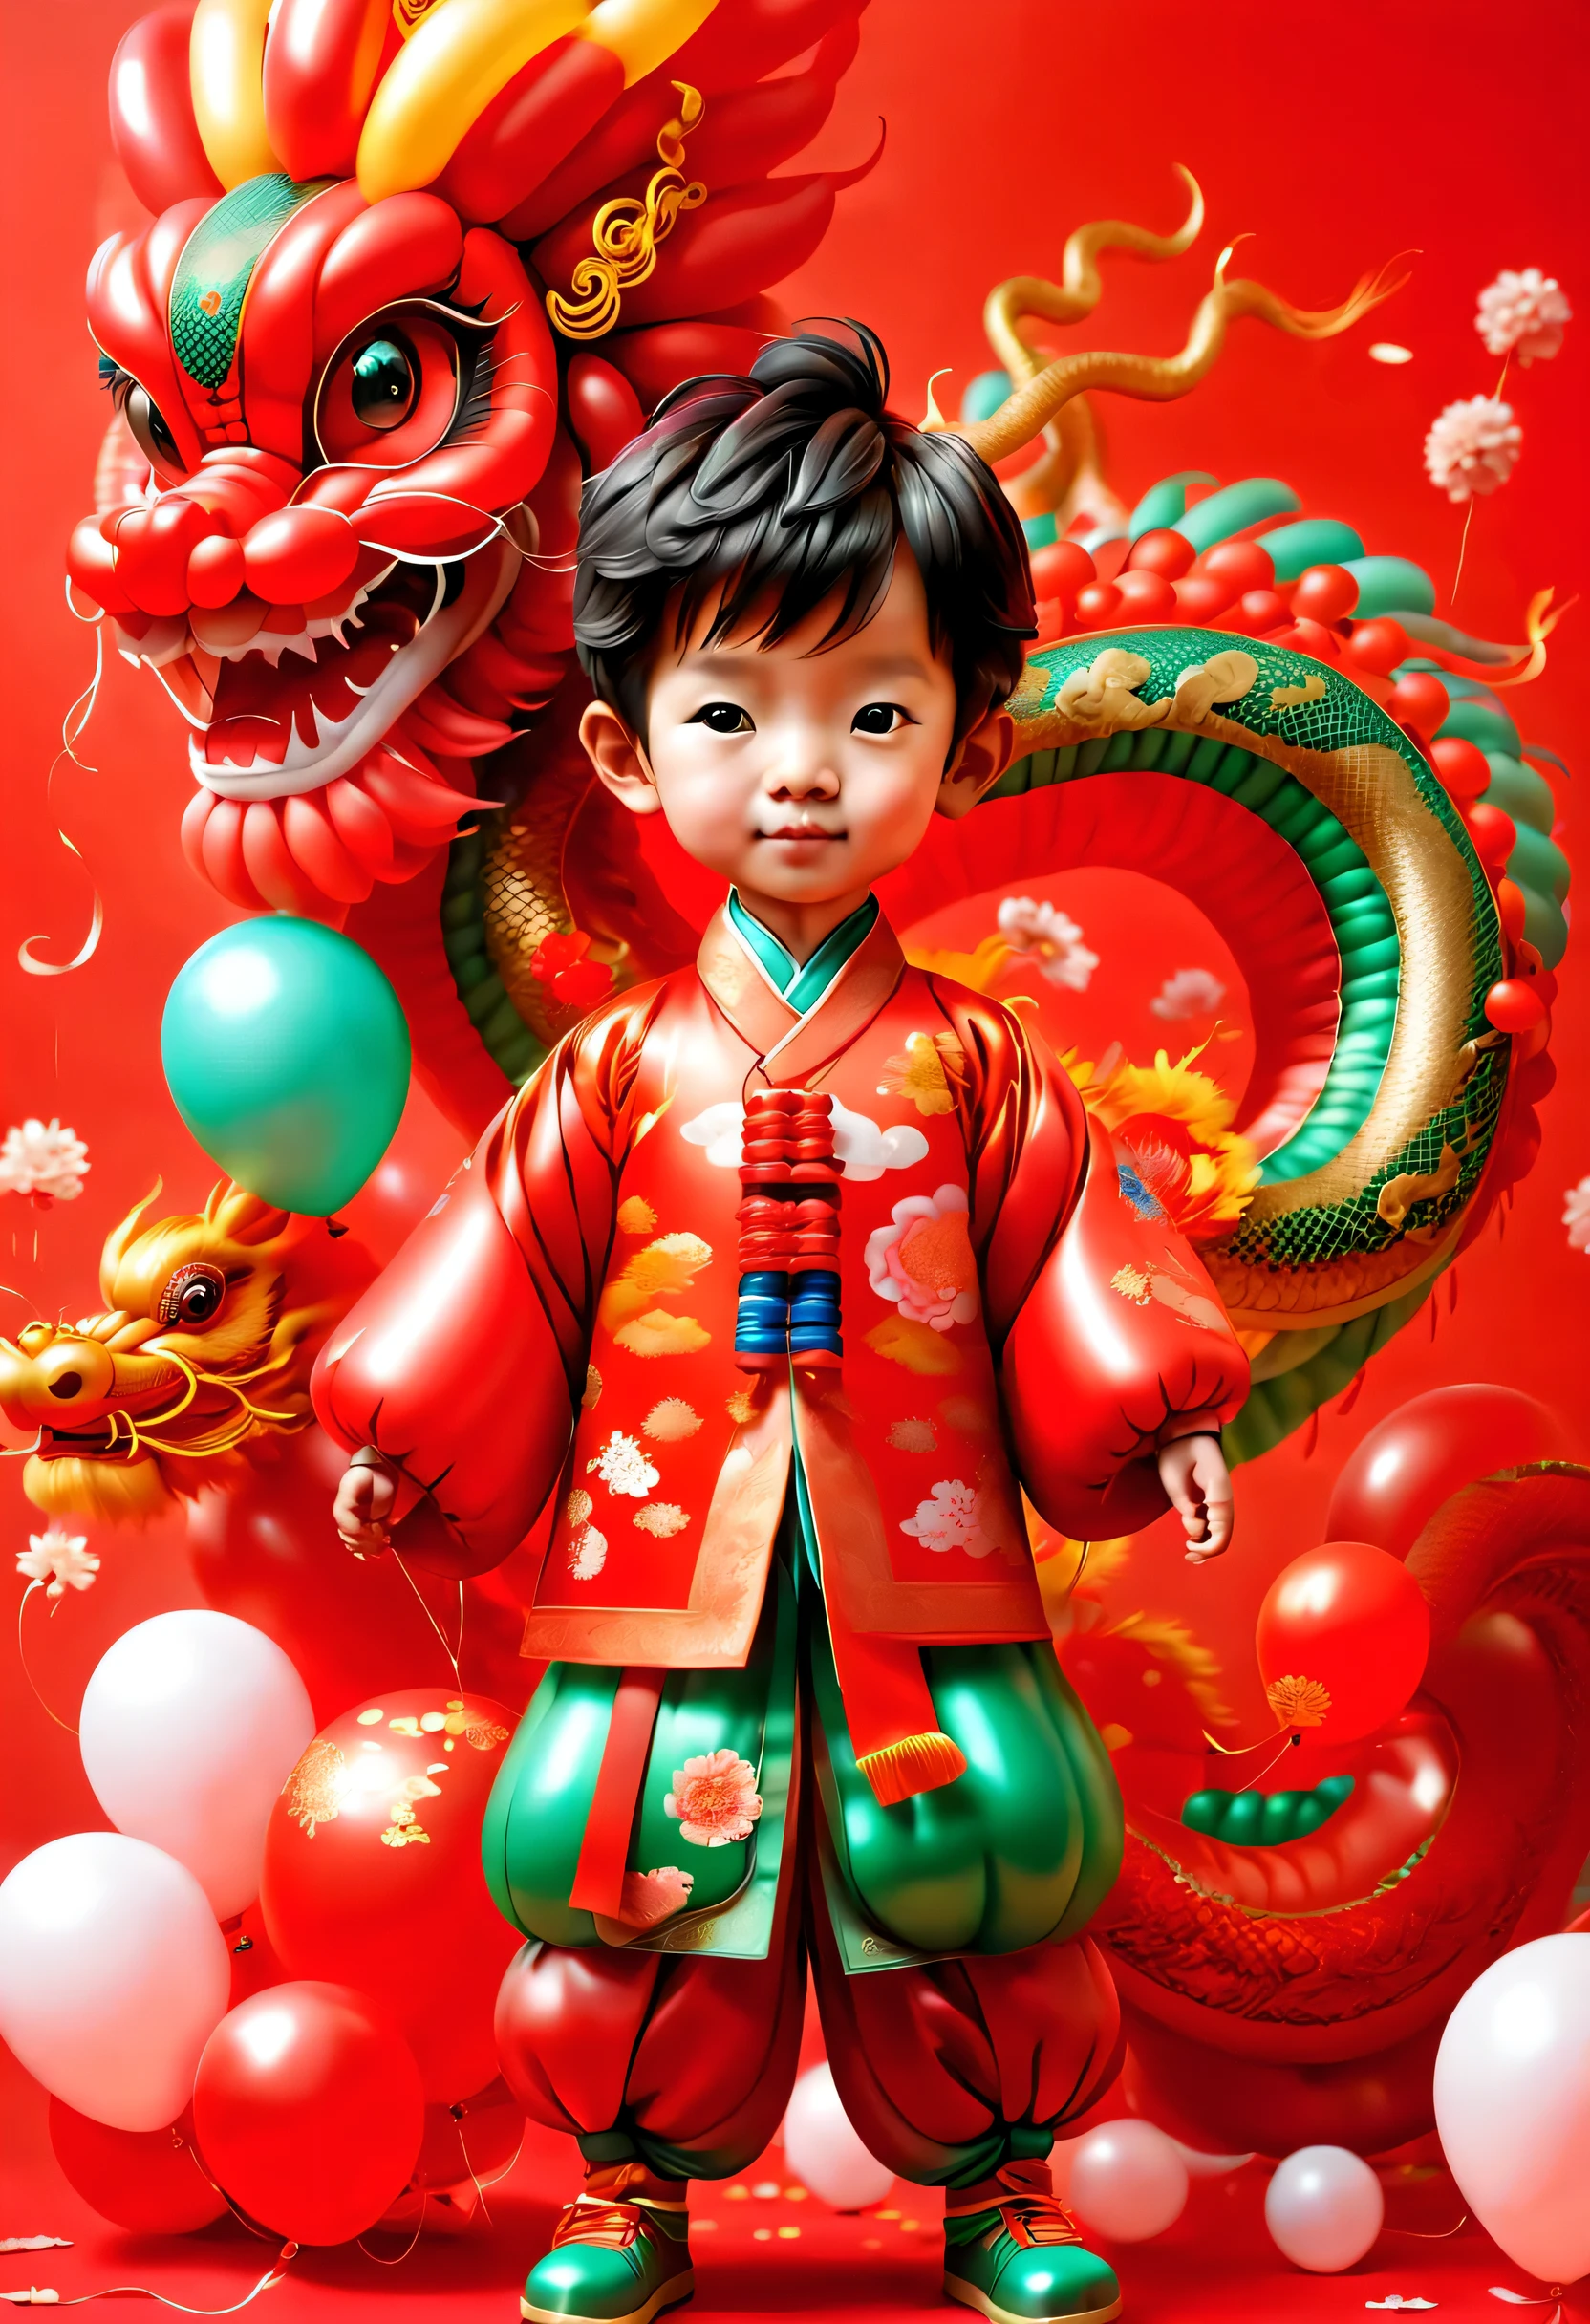 ((1 cute and festive อุดมสมบูรณ์และมีสีสัน red balloon Chinese dragon and a balloon 3 year old little boy, สวมชุดจีนโบราณที่ทำจากลูกโป่ง, เทศกาลฤดูใบไม้ผลิ, พลุ, เซียงหยุน, พื้นหลังสีแดง)), ศิลปะดิจิตอลที่น่ารักและมีรายละเอียด, มีเสน่ห์数字, มีเสน่ห์气球企鹅, มีเสน่ห์ detailed artwork, มีเสน่ห์ 3d 渲染, ตัวเลขมีรายละเอียดมาก, Cute and อุดมสมบูรณ์และมีสีสัน, มีเสน่ห์, งานศิลปะดิจิทัลที่มีรายละเอียดสูง, อุดมไปด้วยรายละเอียด、อุดมสมบูรณ์และมีสีสัน